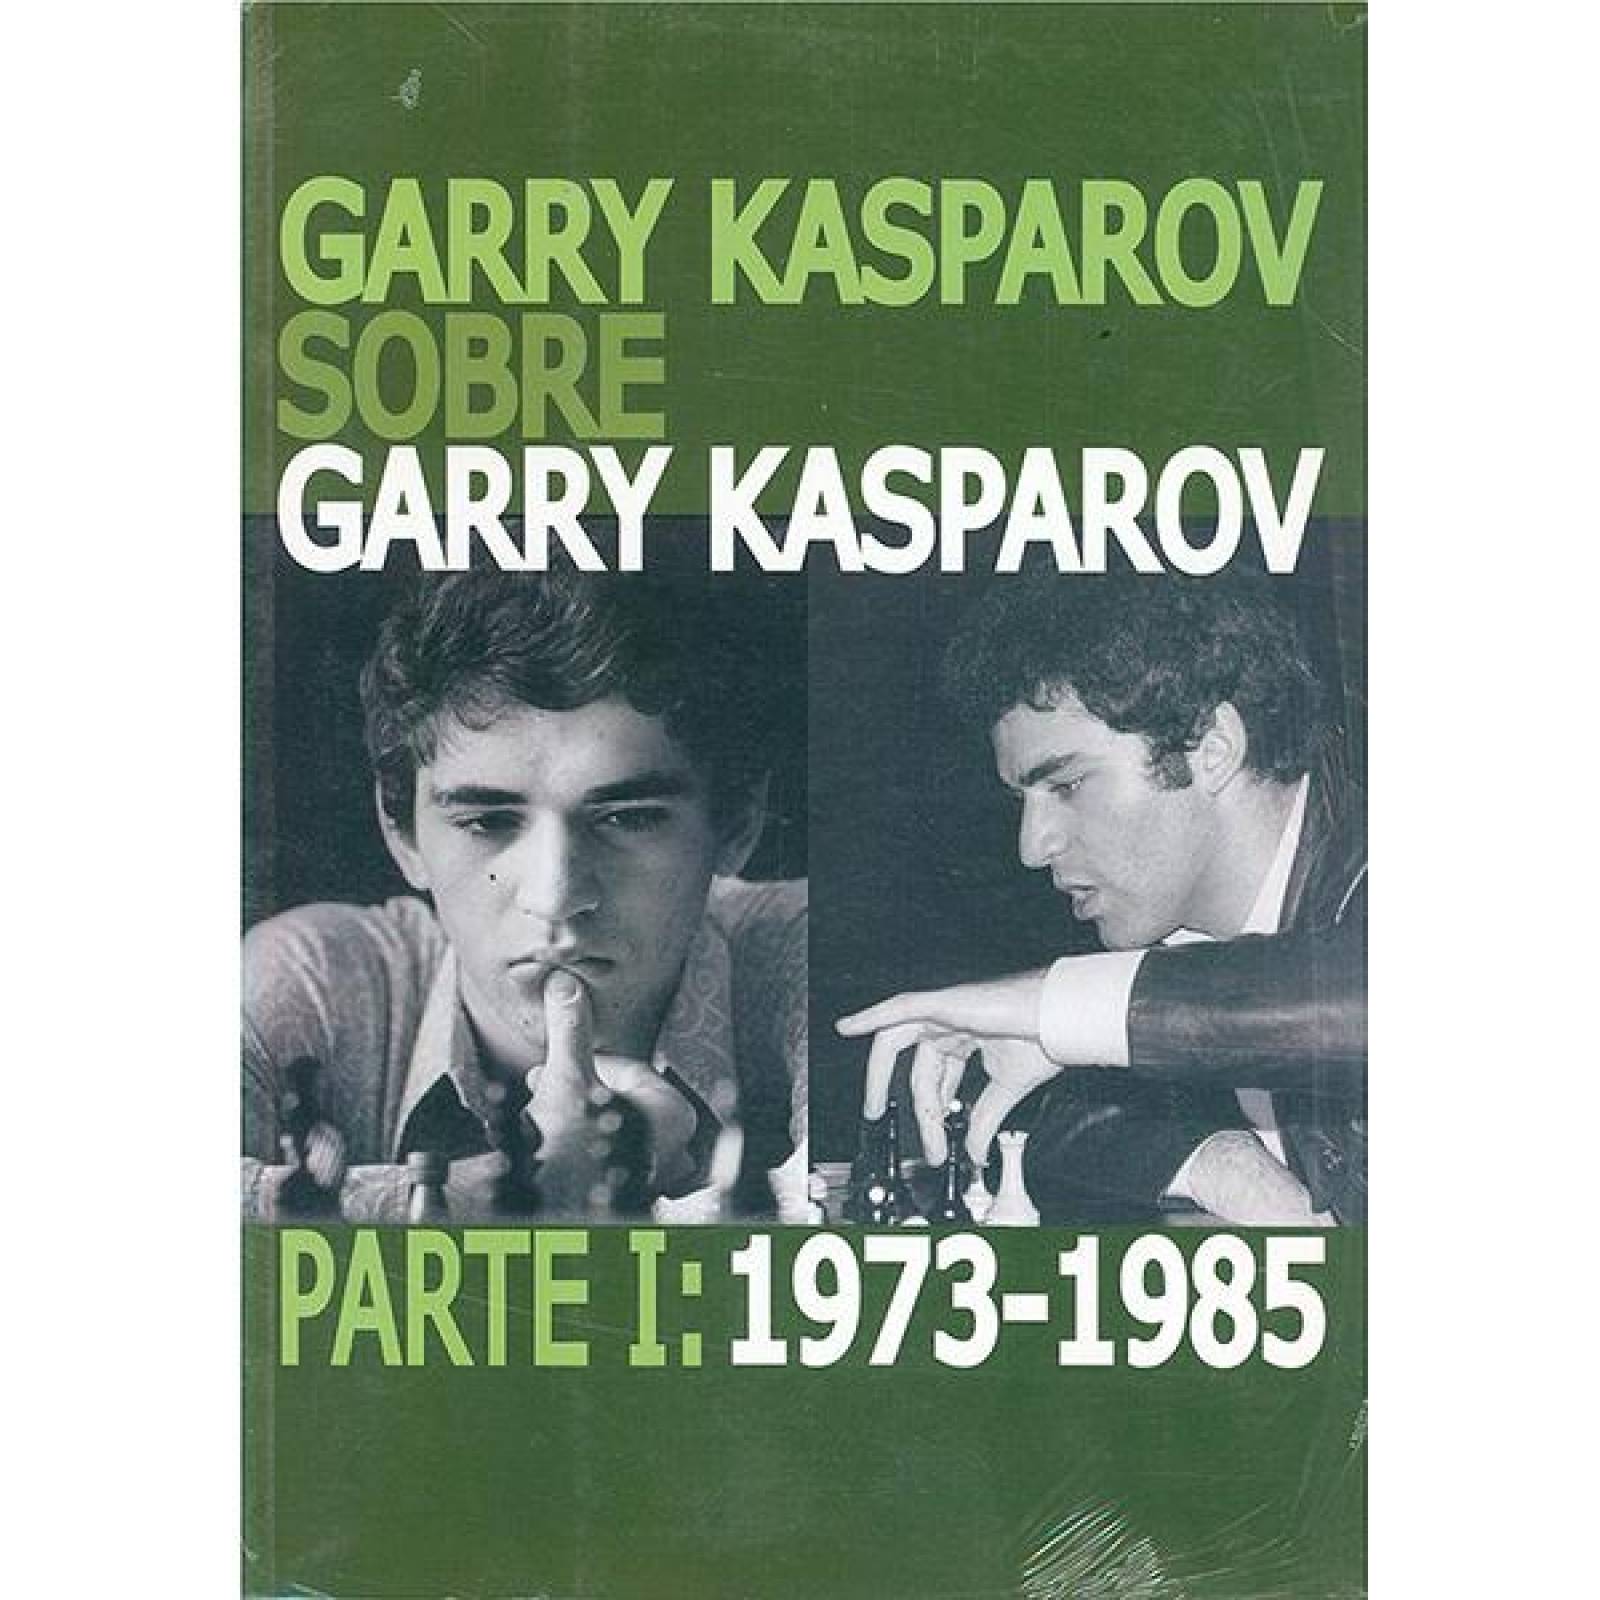 Garry kasparov sobre garry kasparov 